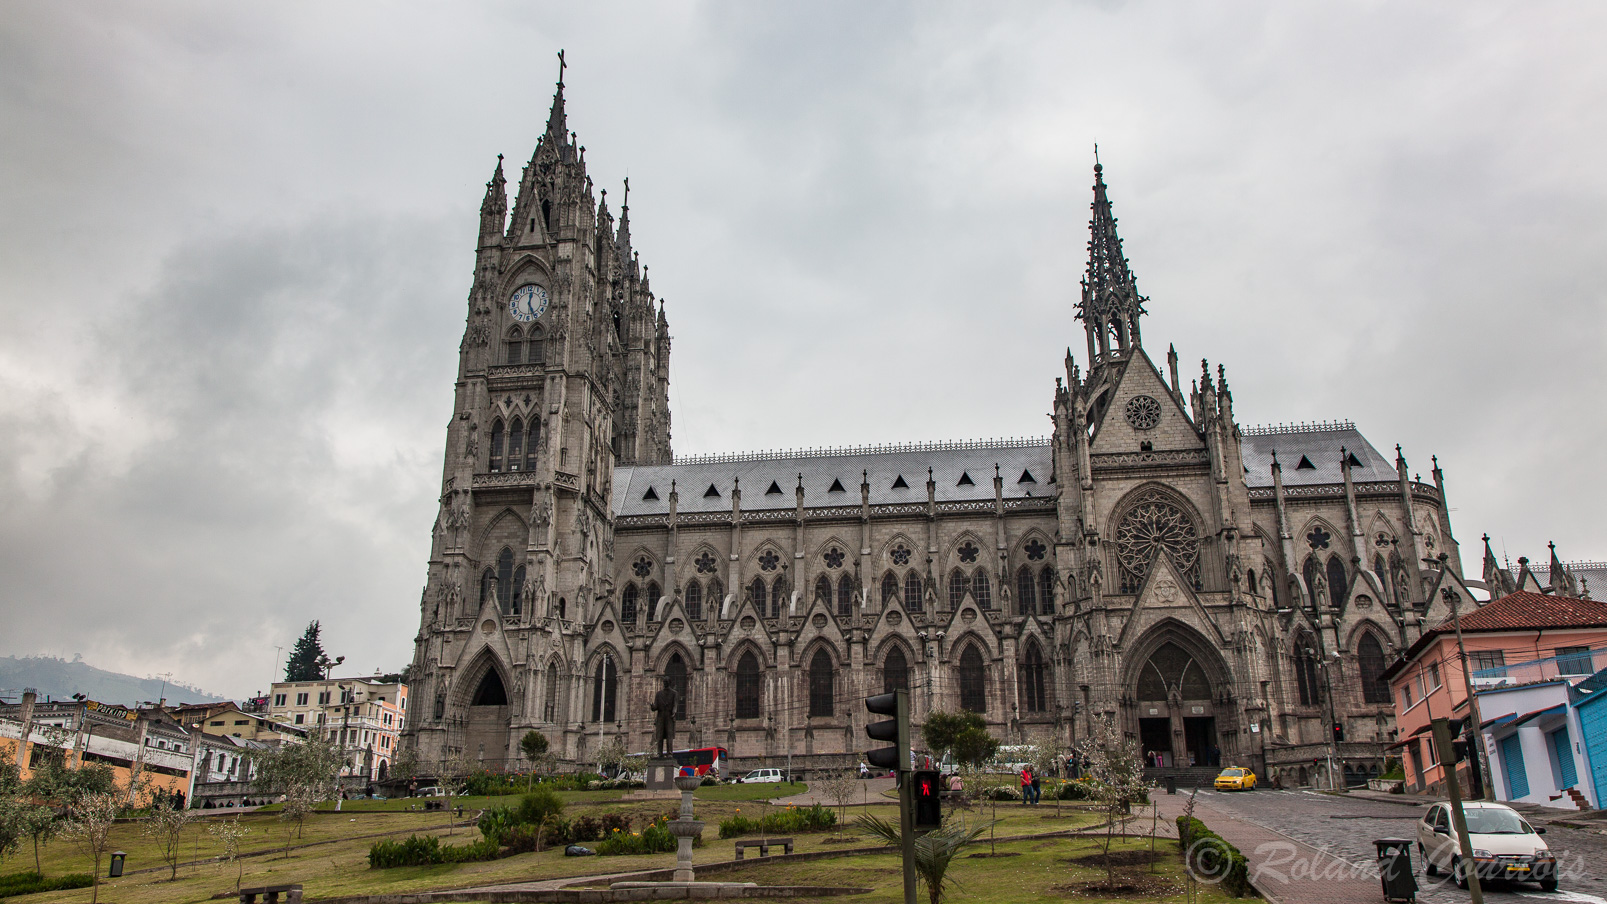 La basilique del Voto Nacional, considérée comme le lieu de culte le plus grand d’Equateur et d’Amérique du Sud, s’impose grâce à son style architectural néogothique,